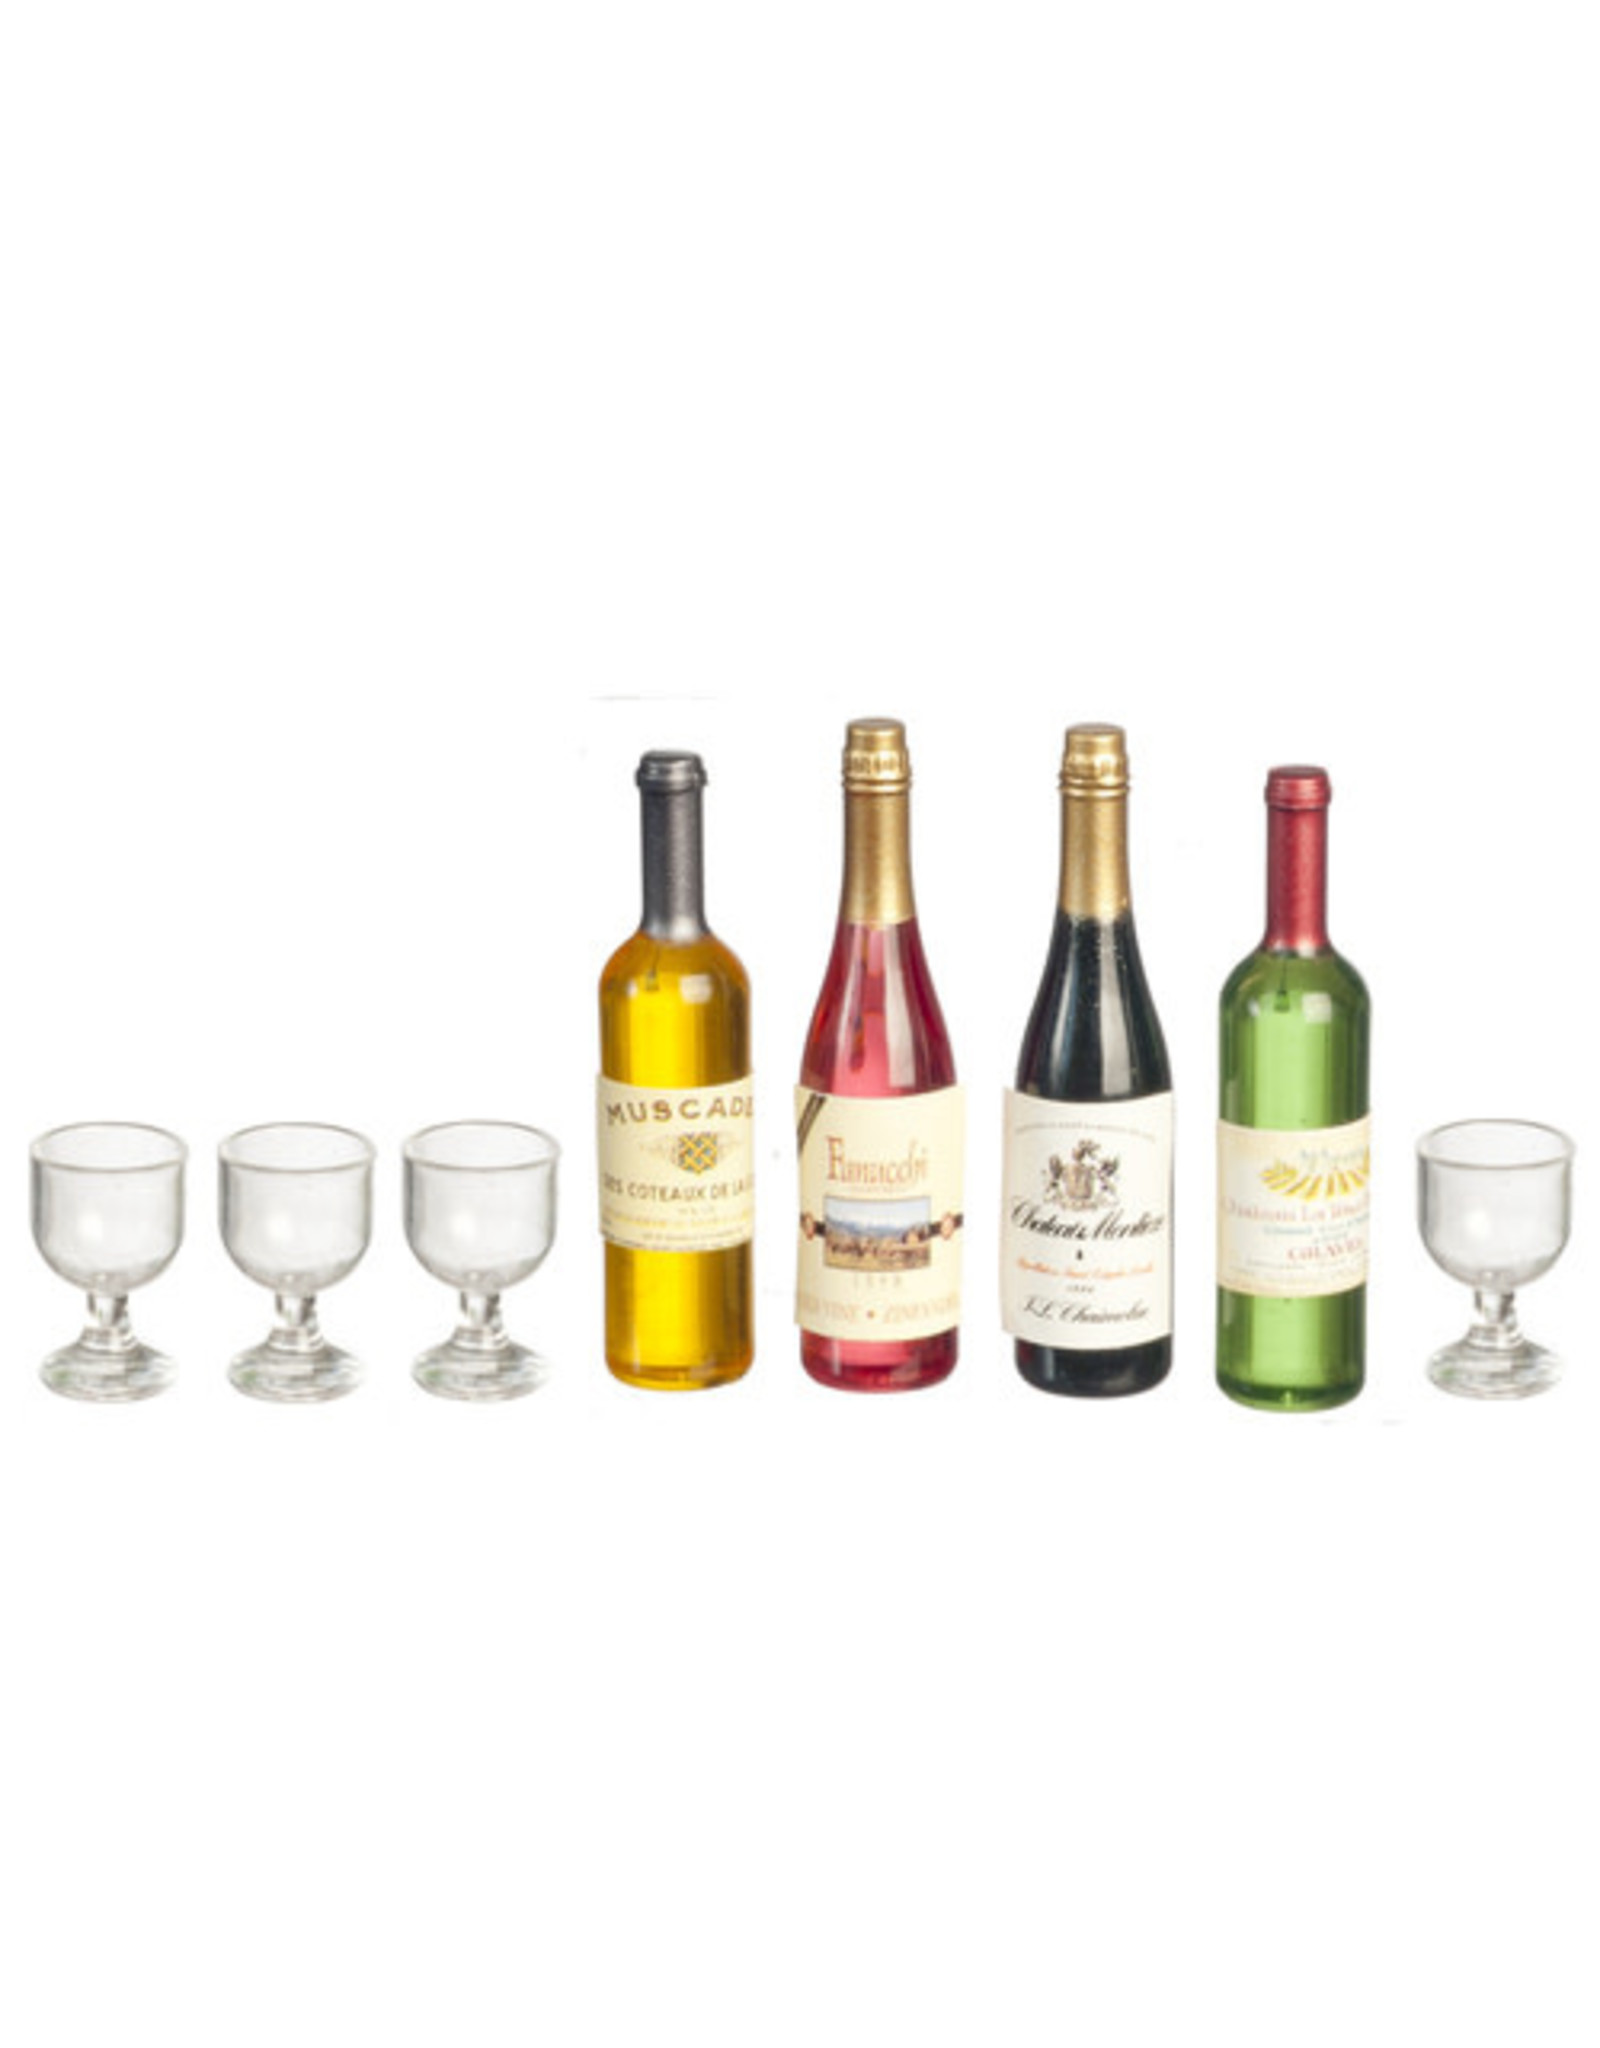 Bouteilles de vin (4), verres (4) & étiquettes miniatures 1:12